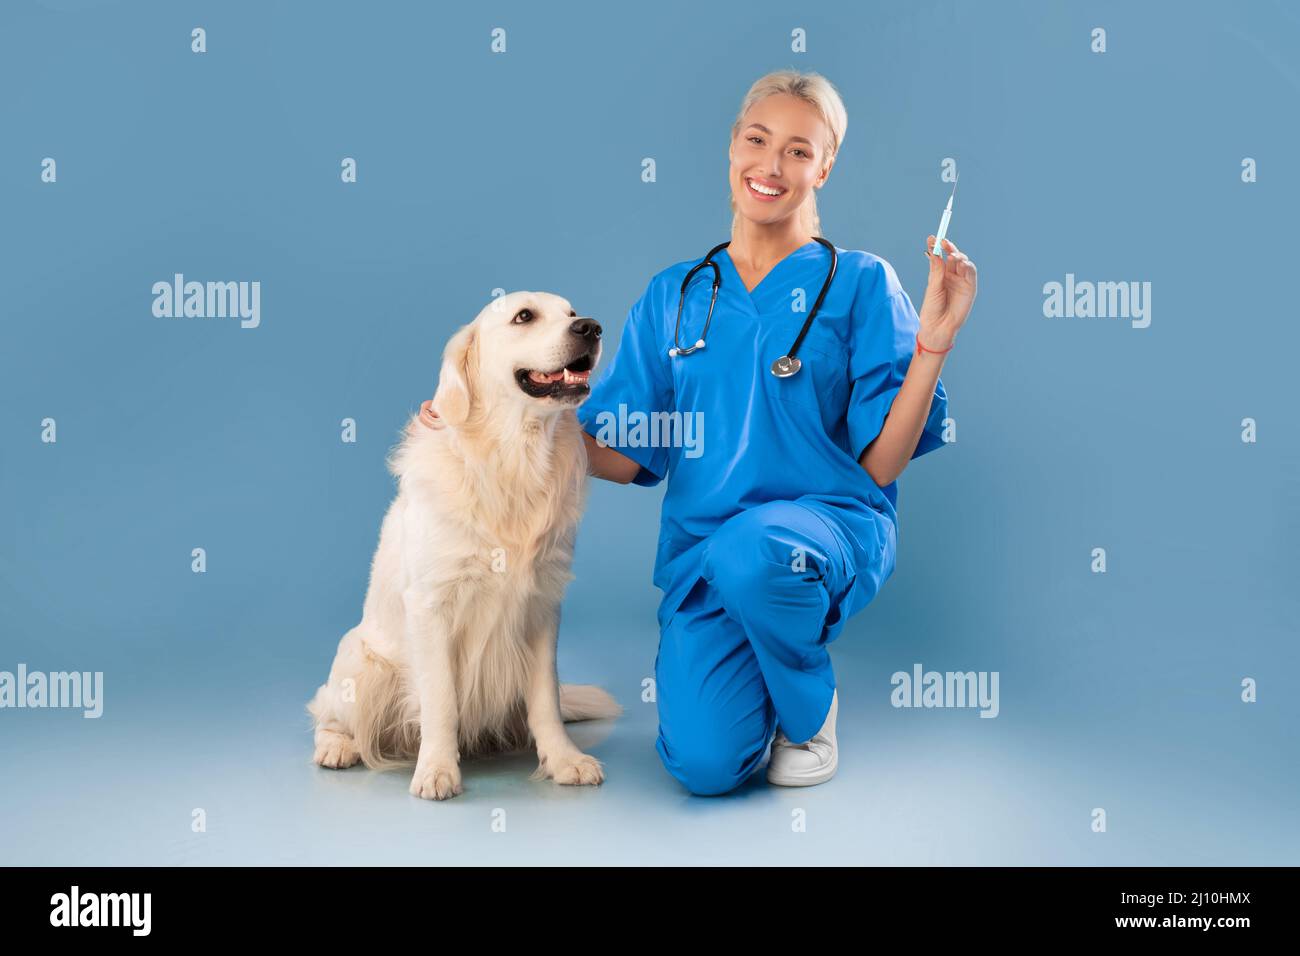 Nurse In Scrubs Uniform Posing With Dog Holding Syringe Stock Photo